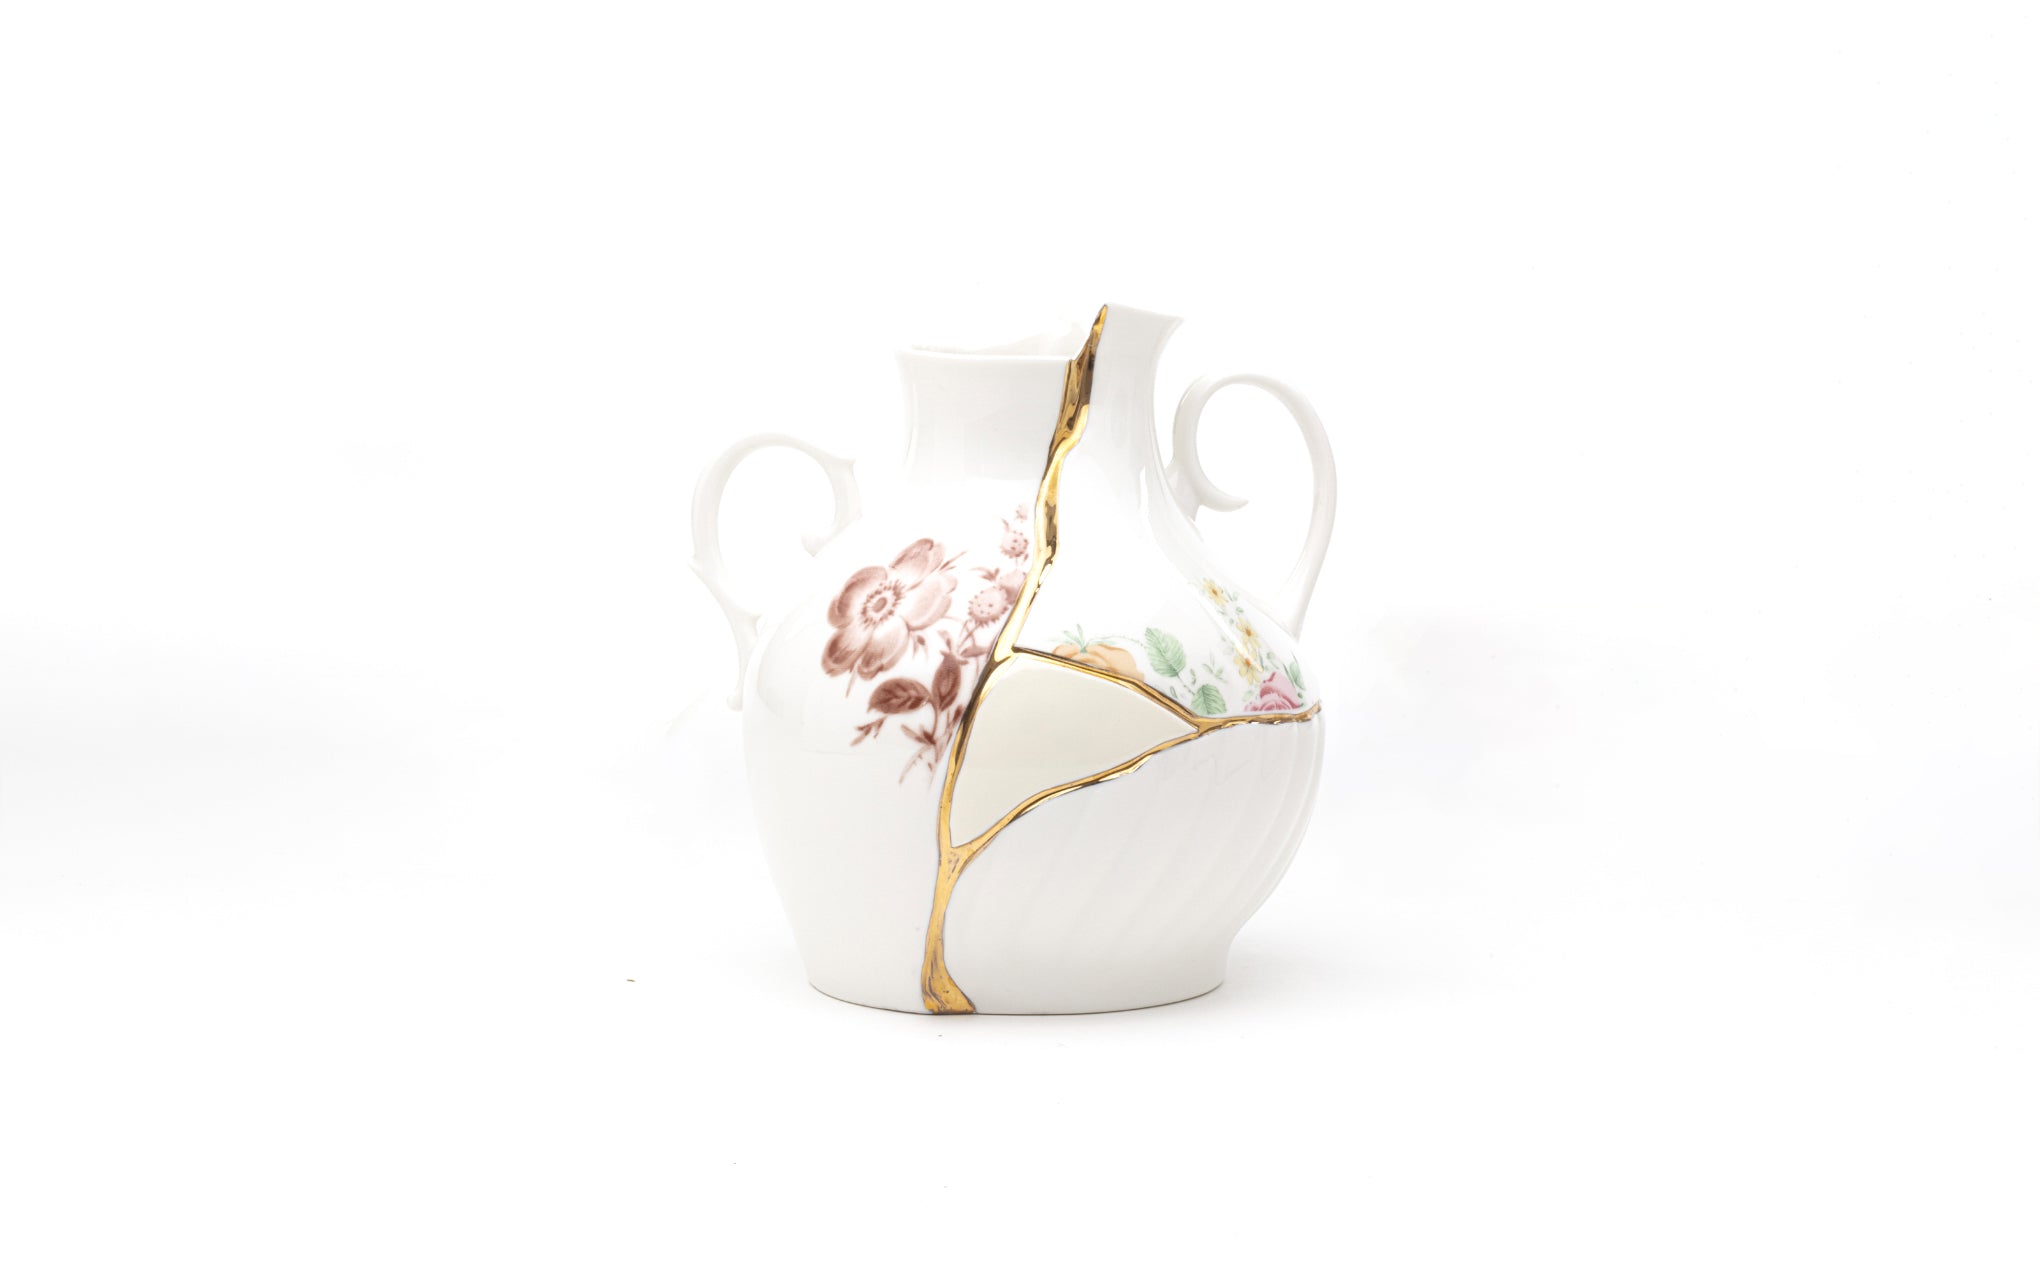 Kintsugi low vase by Seletti